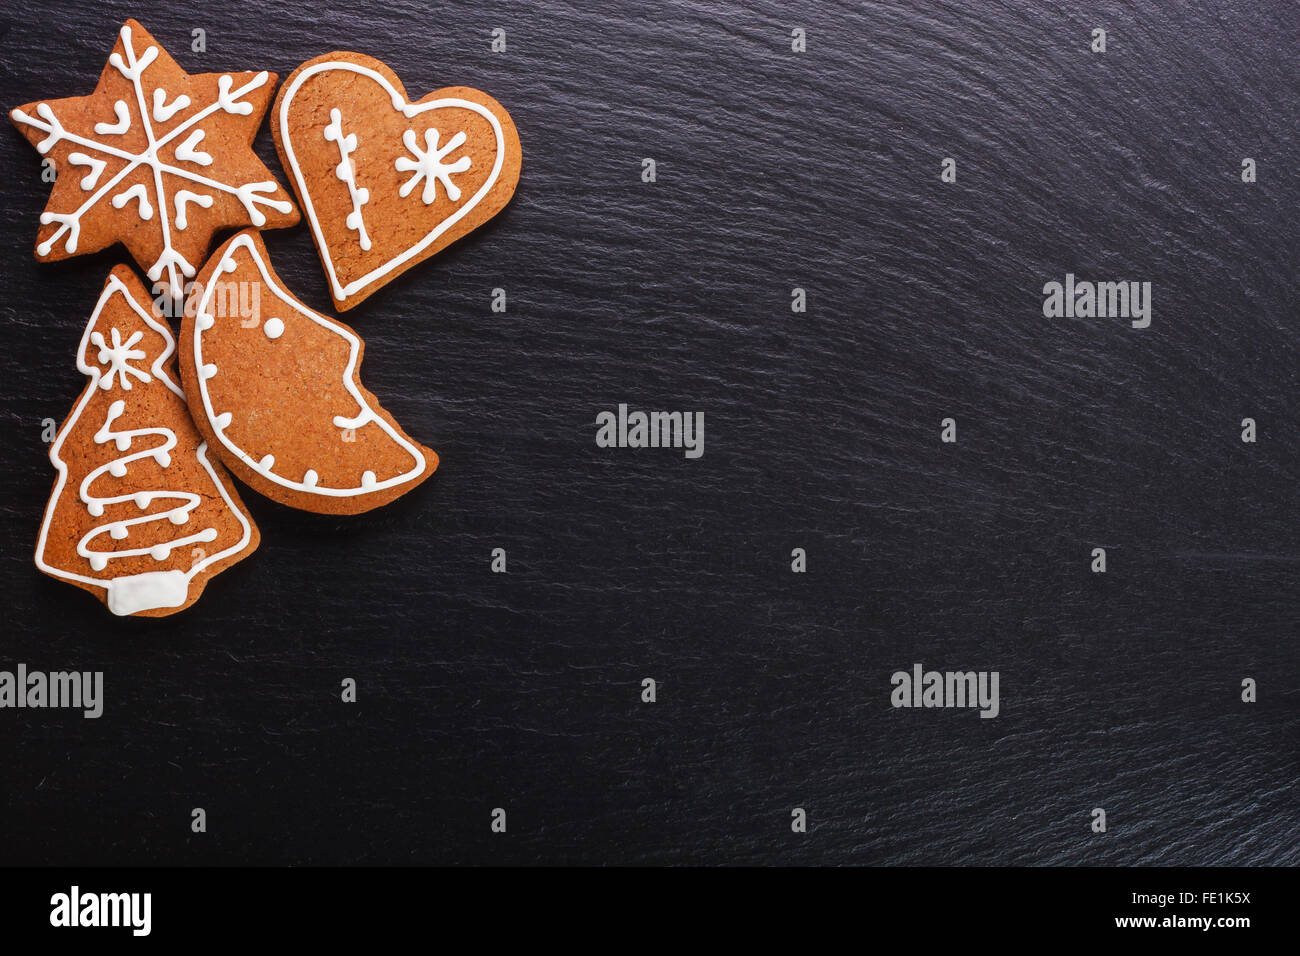 Weihnachtsplätzchen - Lebkuchen auf Schiefer Tafel Stockfoto